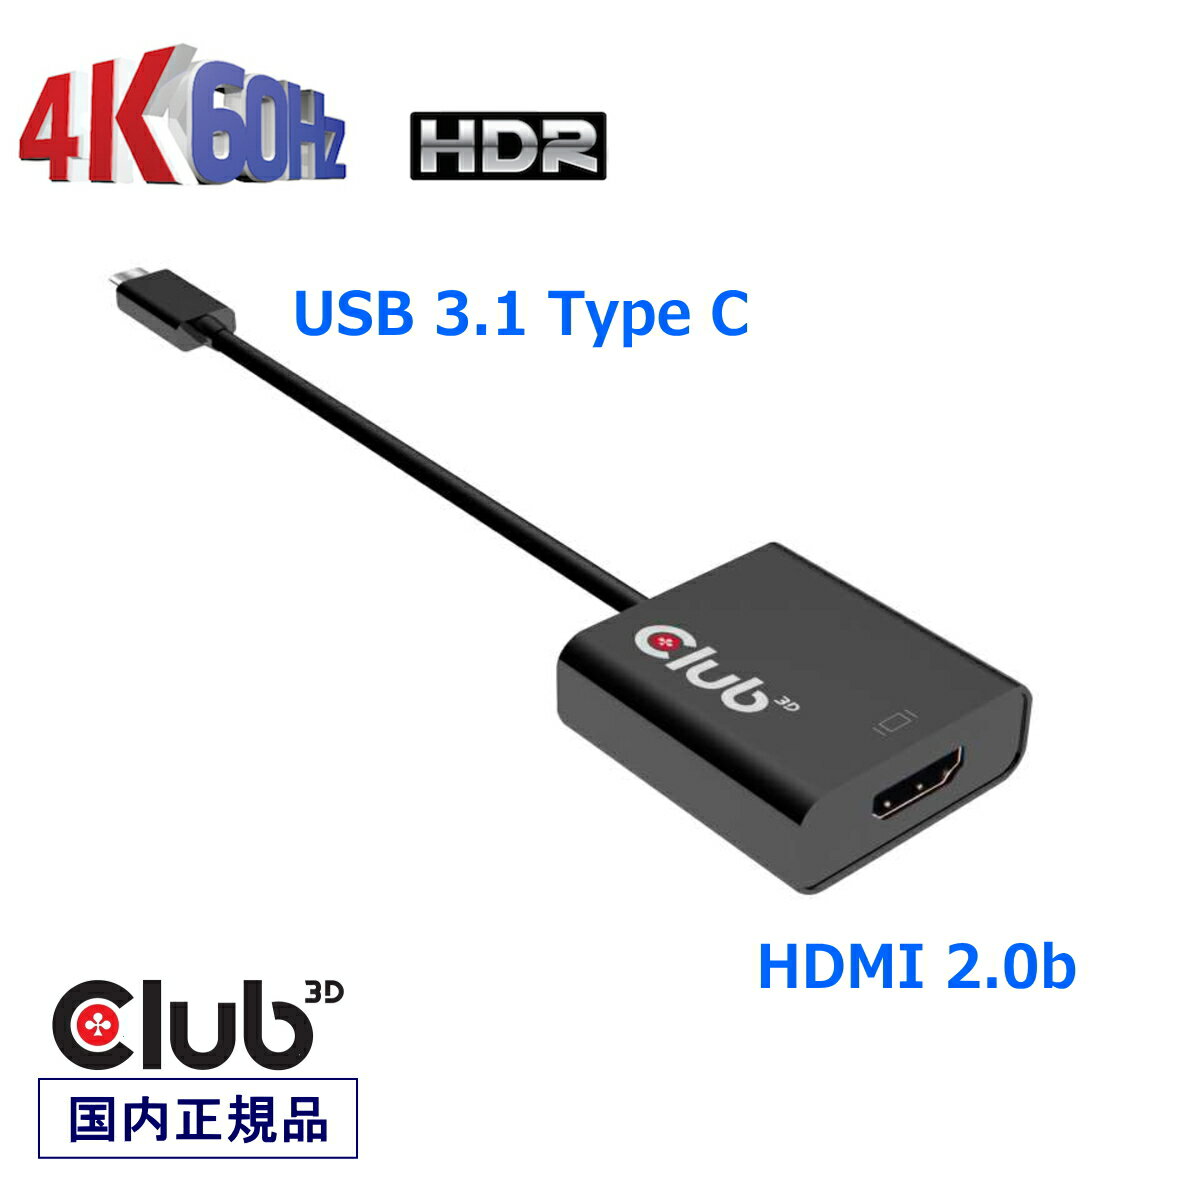 国内正規品 Club3D USB 3.1 Type C to HDMI 2.0b HDR（ハイダイナミックレンジ）対応 4K 60Hz Active Adapter 変換アダプタ(CAC-2504)